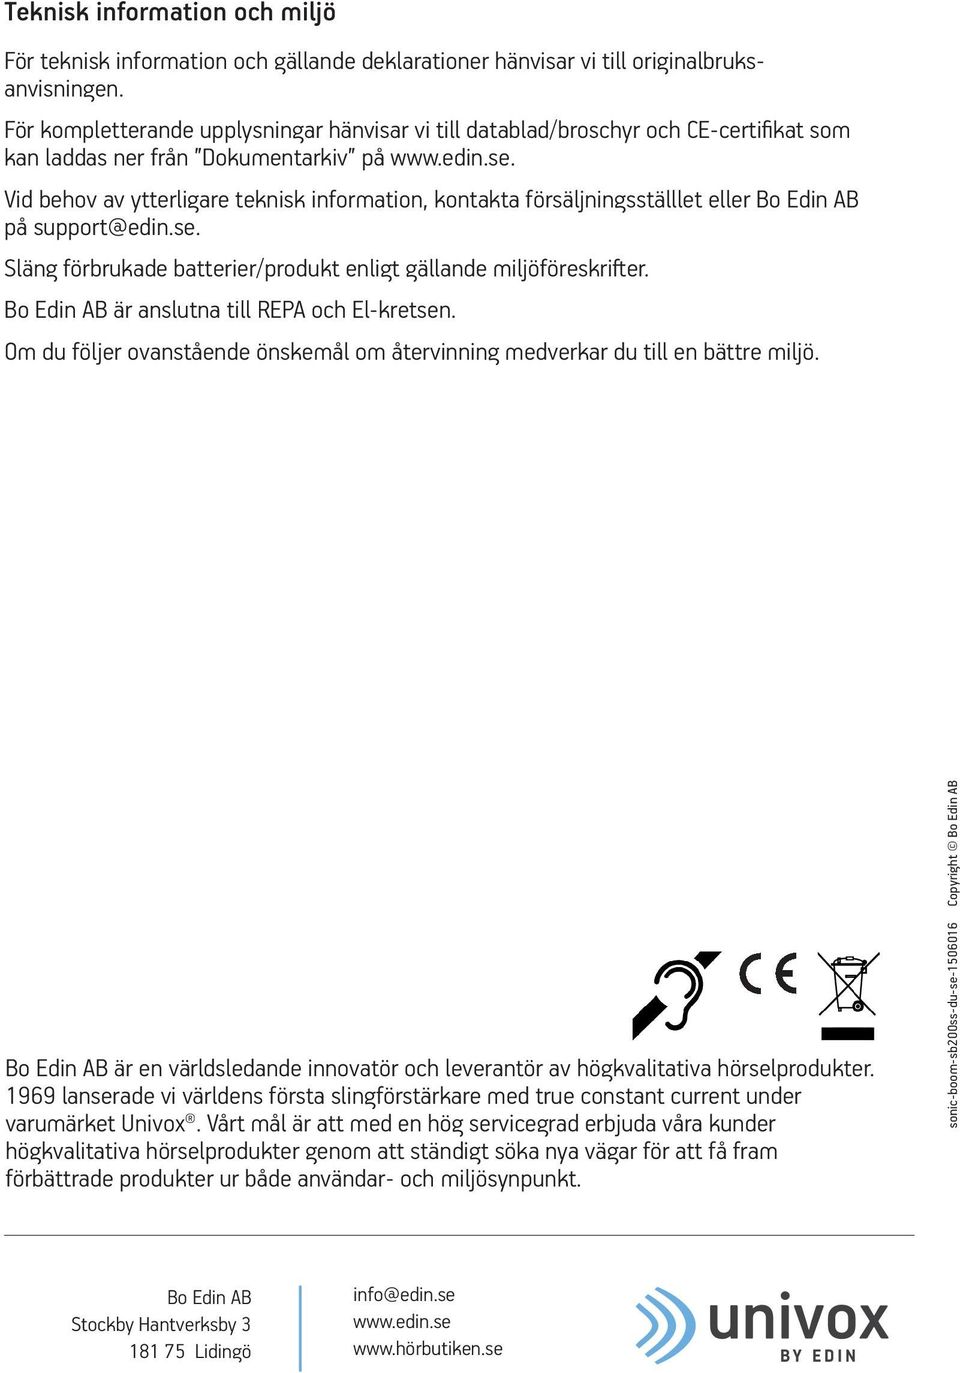 Vid behov av ytterligare teknisk information, kontakta försäljningsställlet eller Bo Edin AB på support@edin.se. Släng förbrukade batterier/produkt enligt gällande miljöföreskrifter.